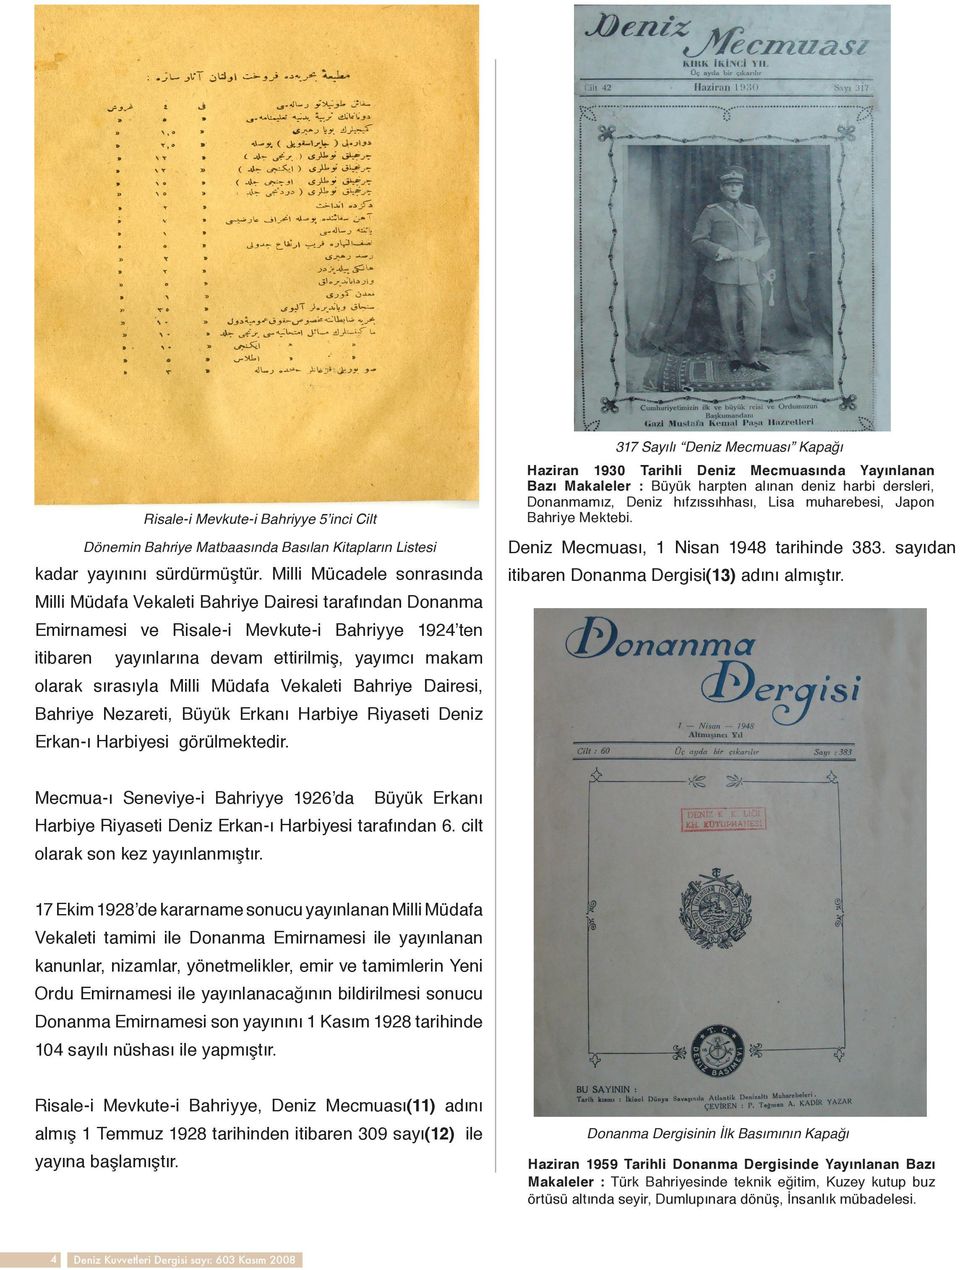 Milli Mücadele sonrasında Milli Müdafa Vekaleti Bahriye Dairesi tarafından Donanma itibaren Donanma Dergisi(13) adını almıştır.